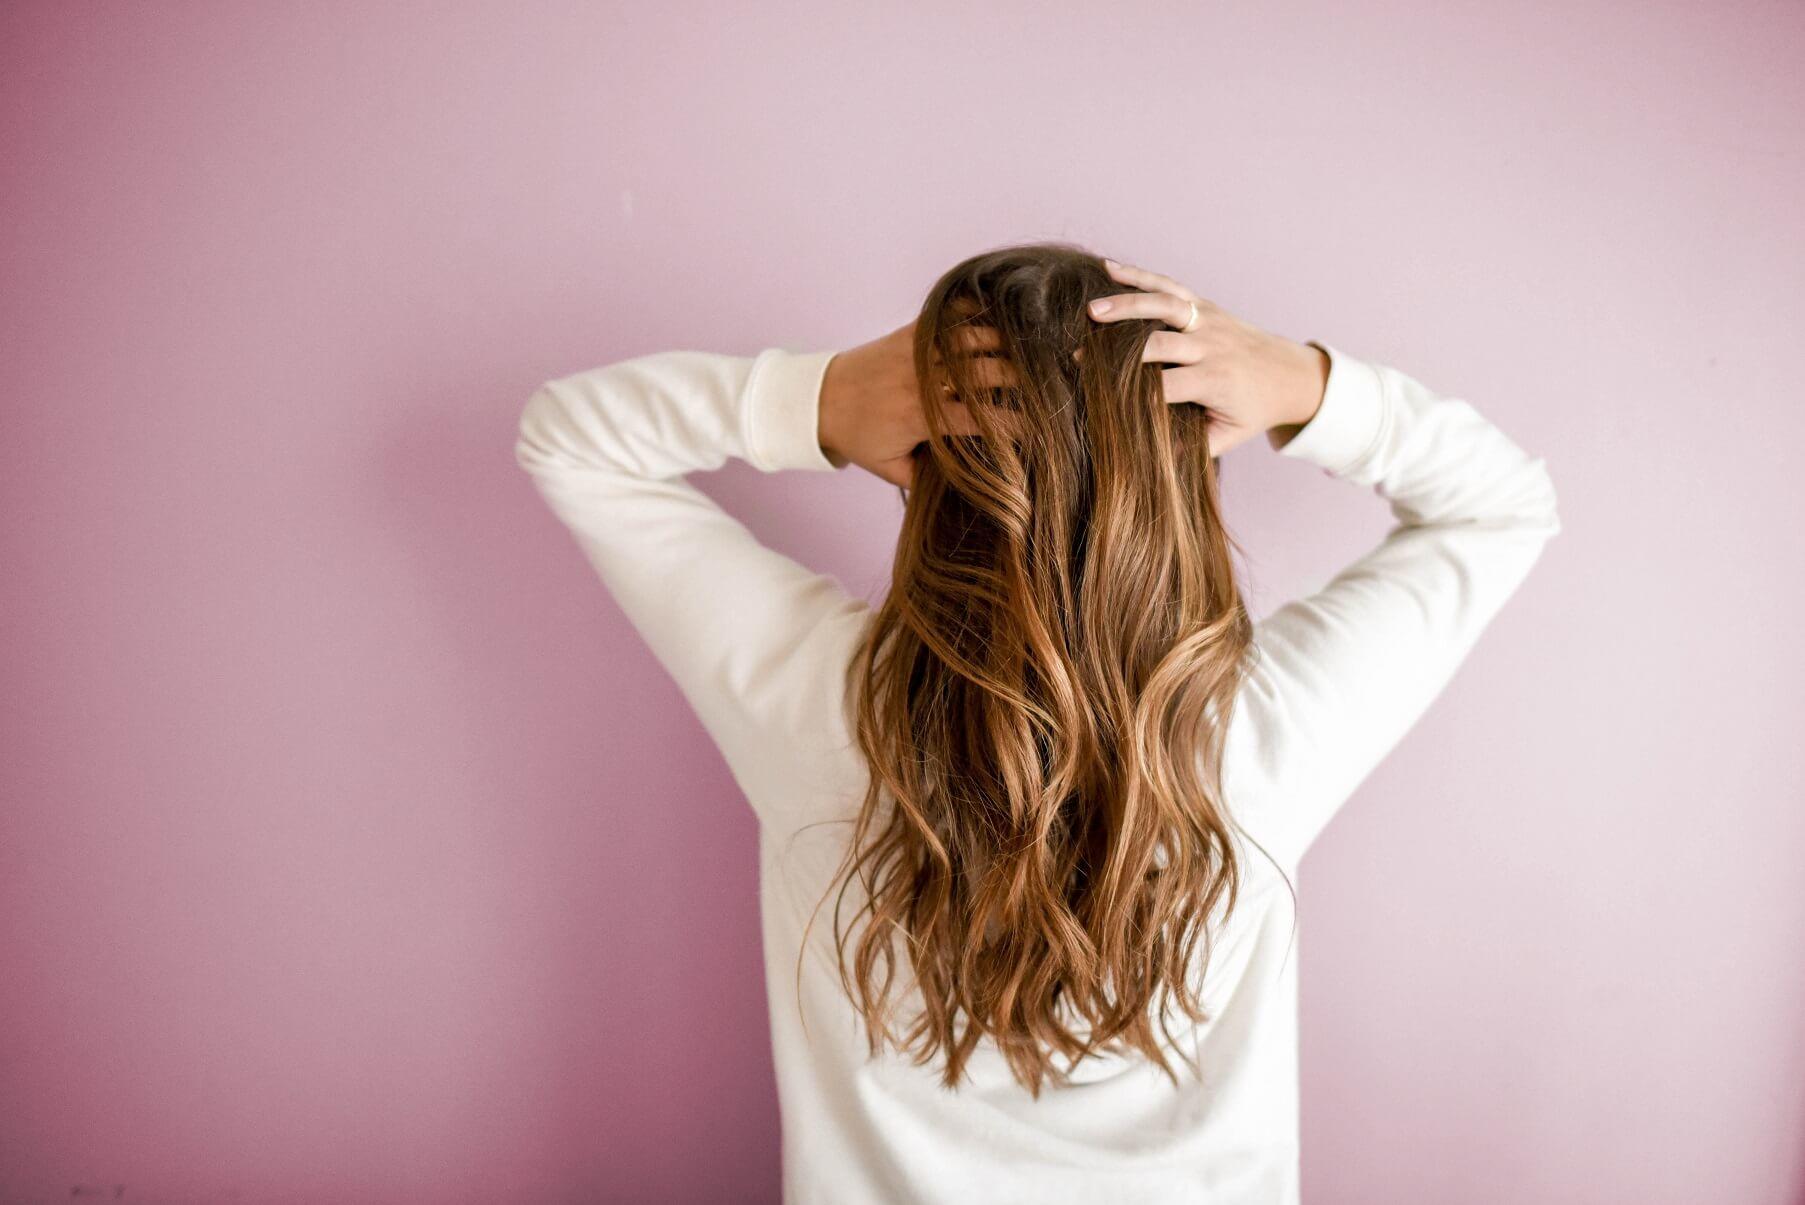 opadanje kose-rast kose-zdrava kosa-kosa-ishrana za kosu-jaka kosa-jačanje kose-sjajna kosa-lepa kosa-ishrana-zdravo-vitamini-proteini-iceberg salat centar-dr. gifing-dr gifing-klub zdravih navika